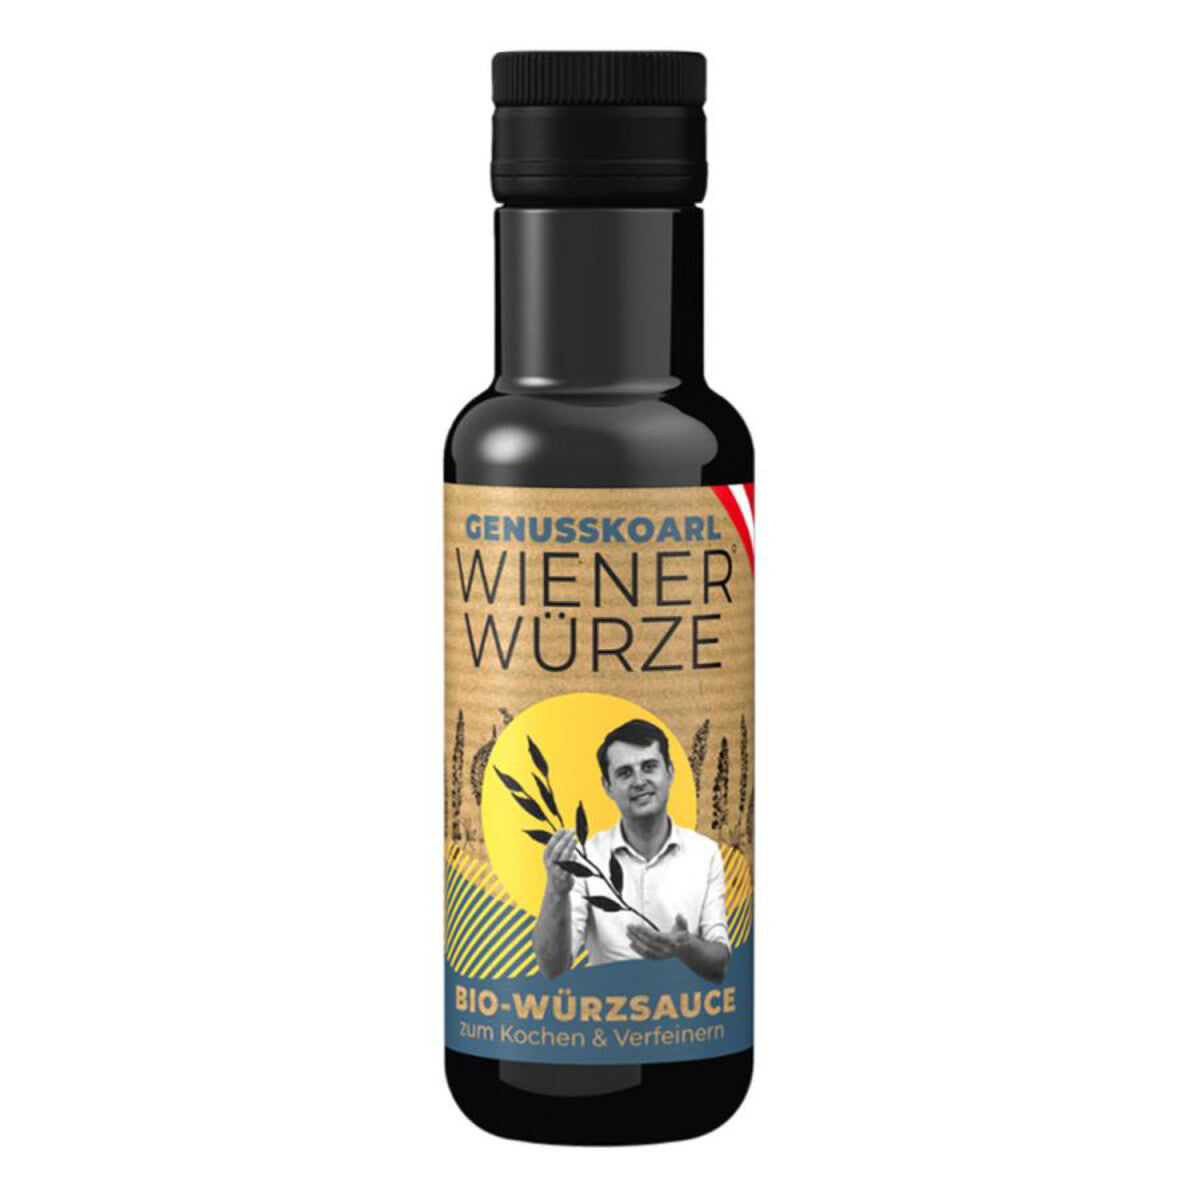 GENUSSKOARL Wiener Würze - 100 ml